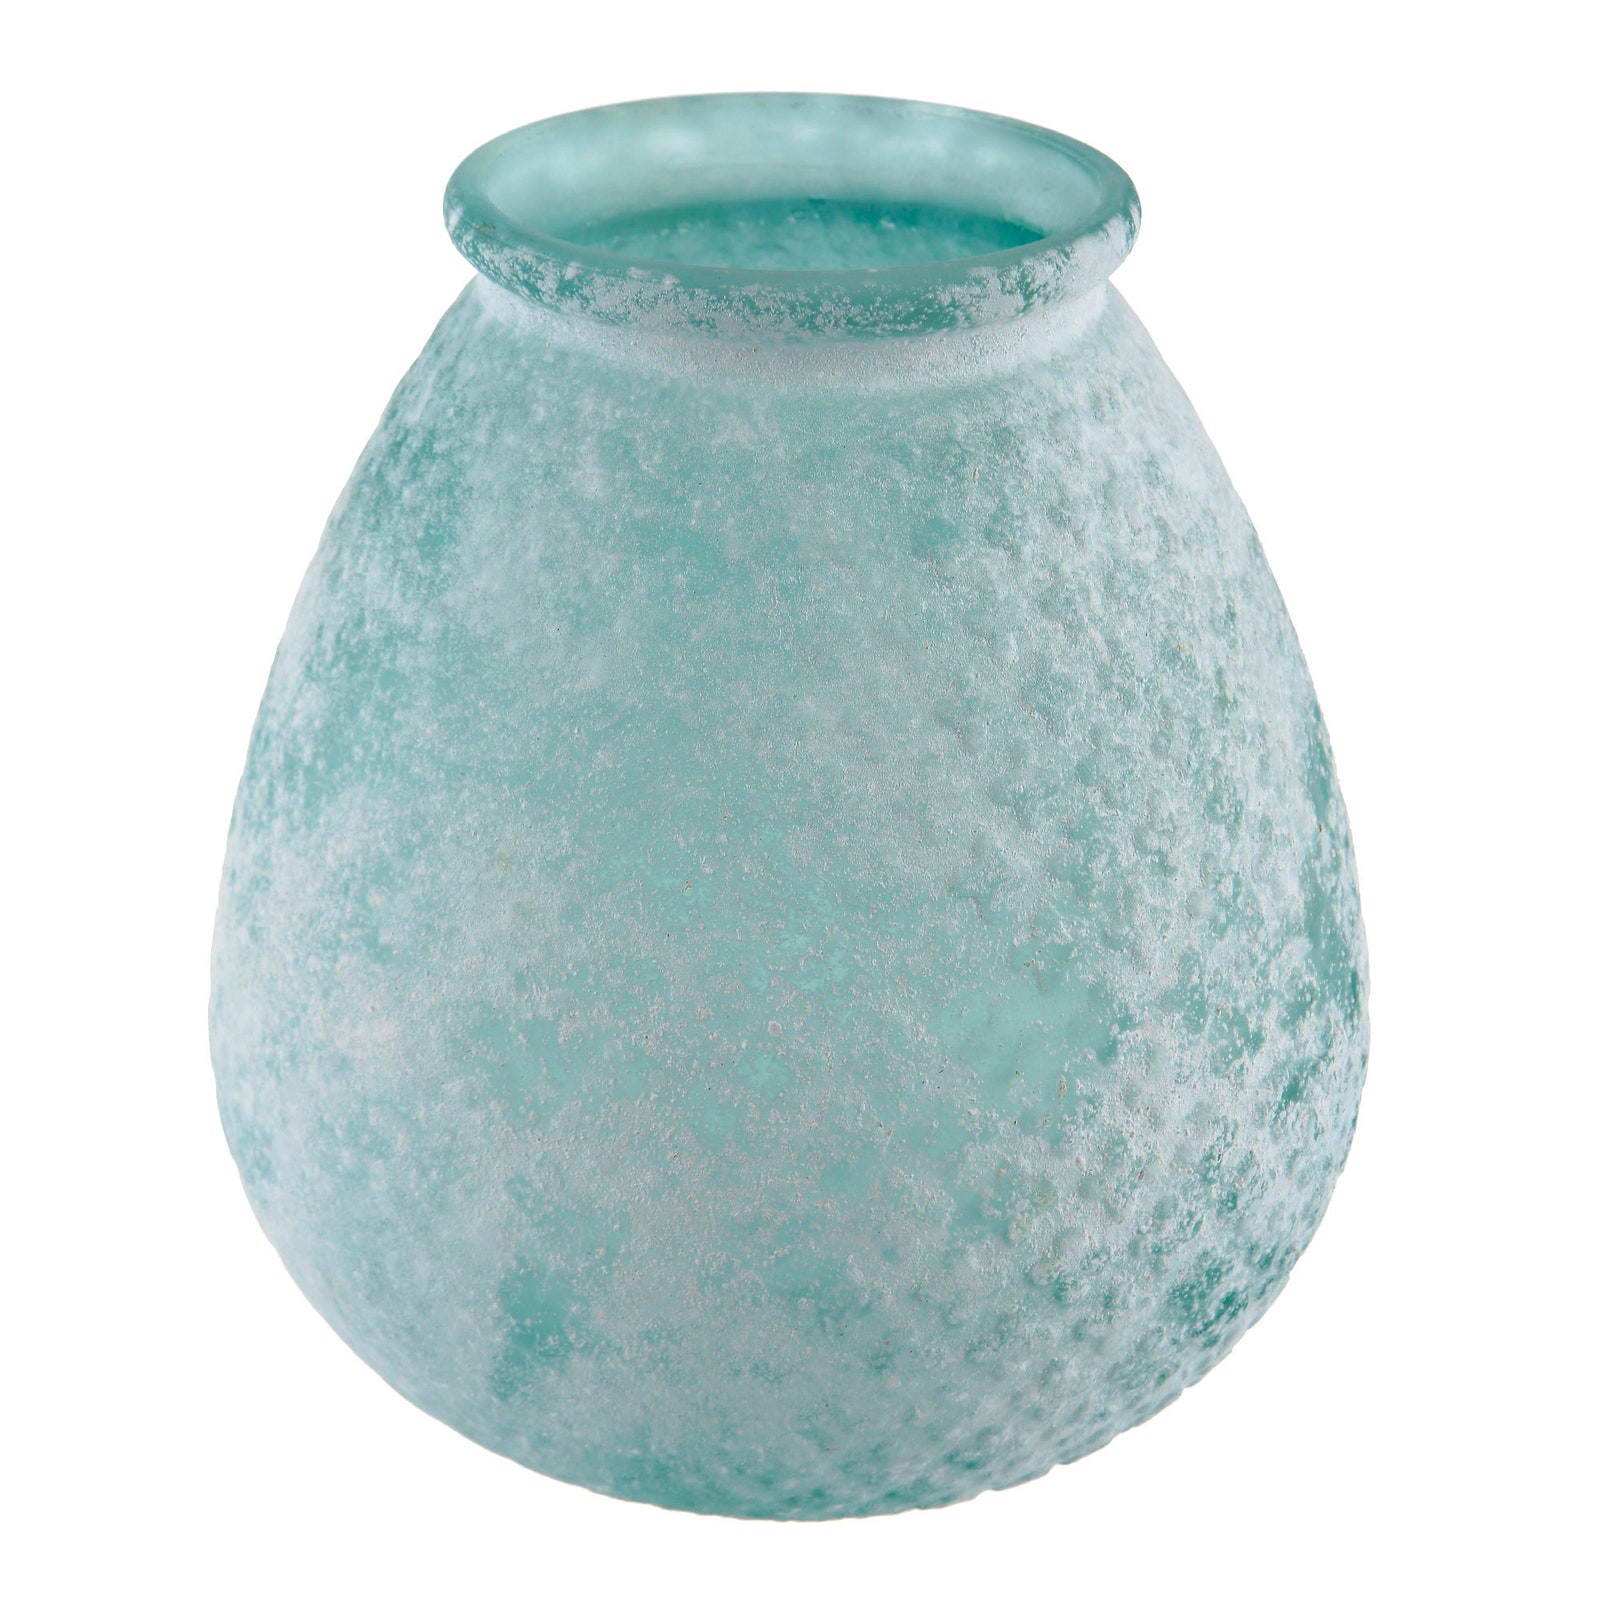 Стеклянная ваза Kersten высота — 27 см 3890 руб.